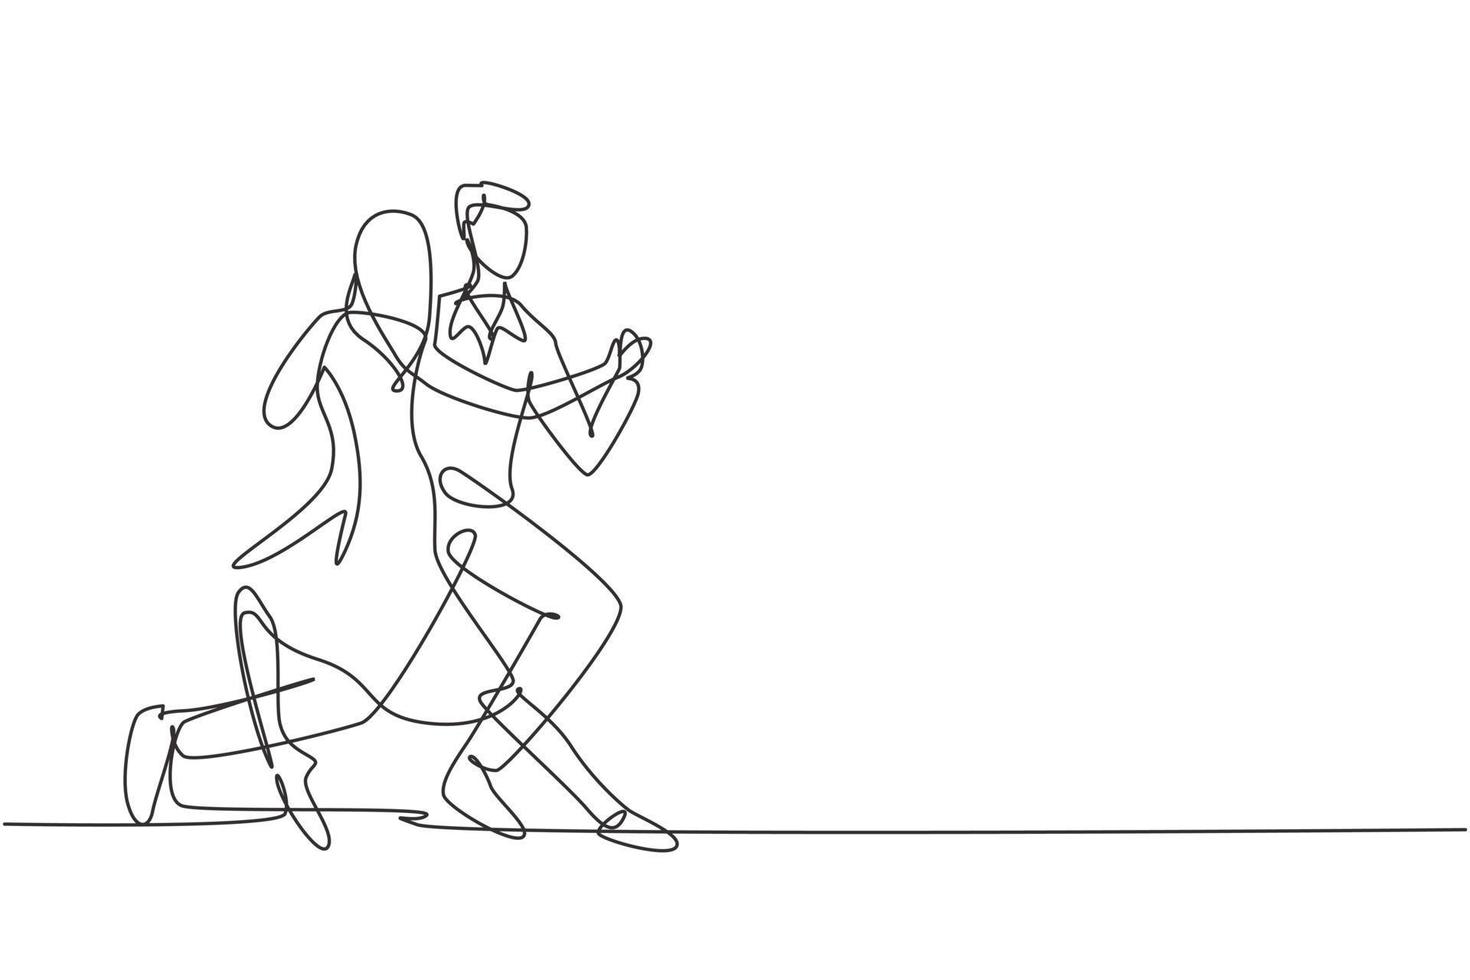 enda kontinuerlig linjeteckning människor som dansar salsa. par, man och kvinna i dans. danspar med vals tango och salsa stilar moves. dynamisk en rad rita grafisk design vektorillustration vektor